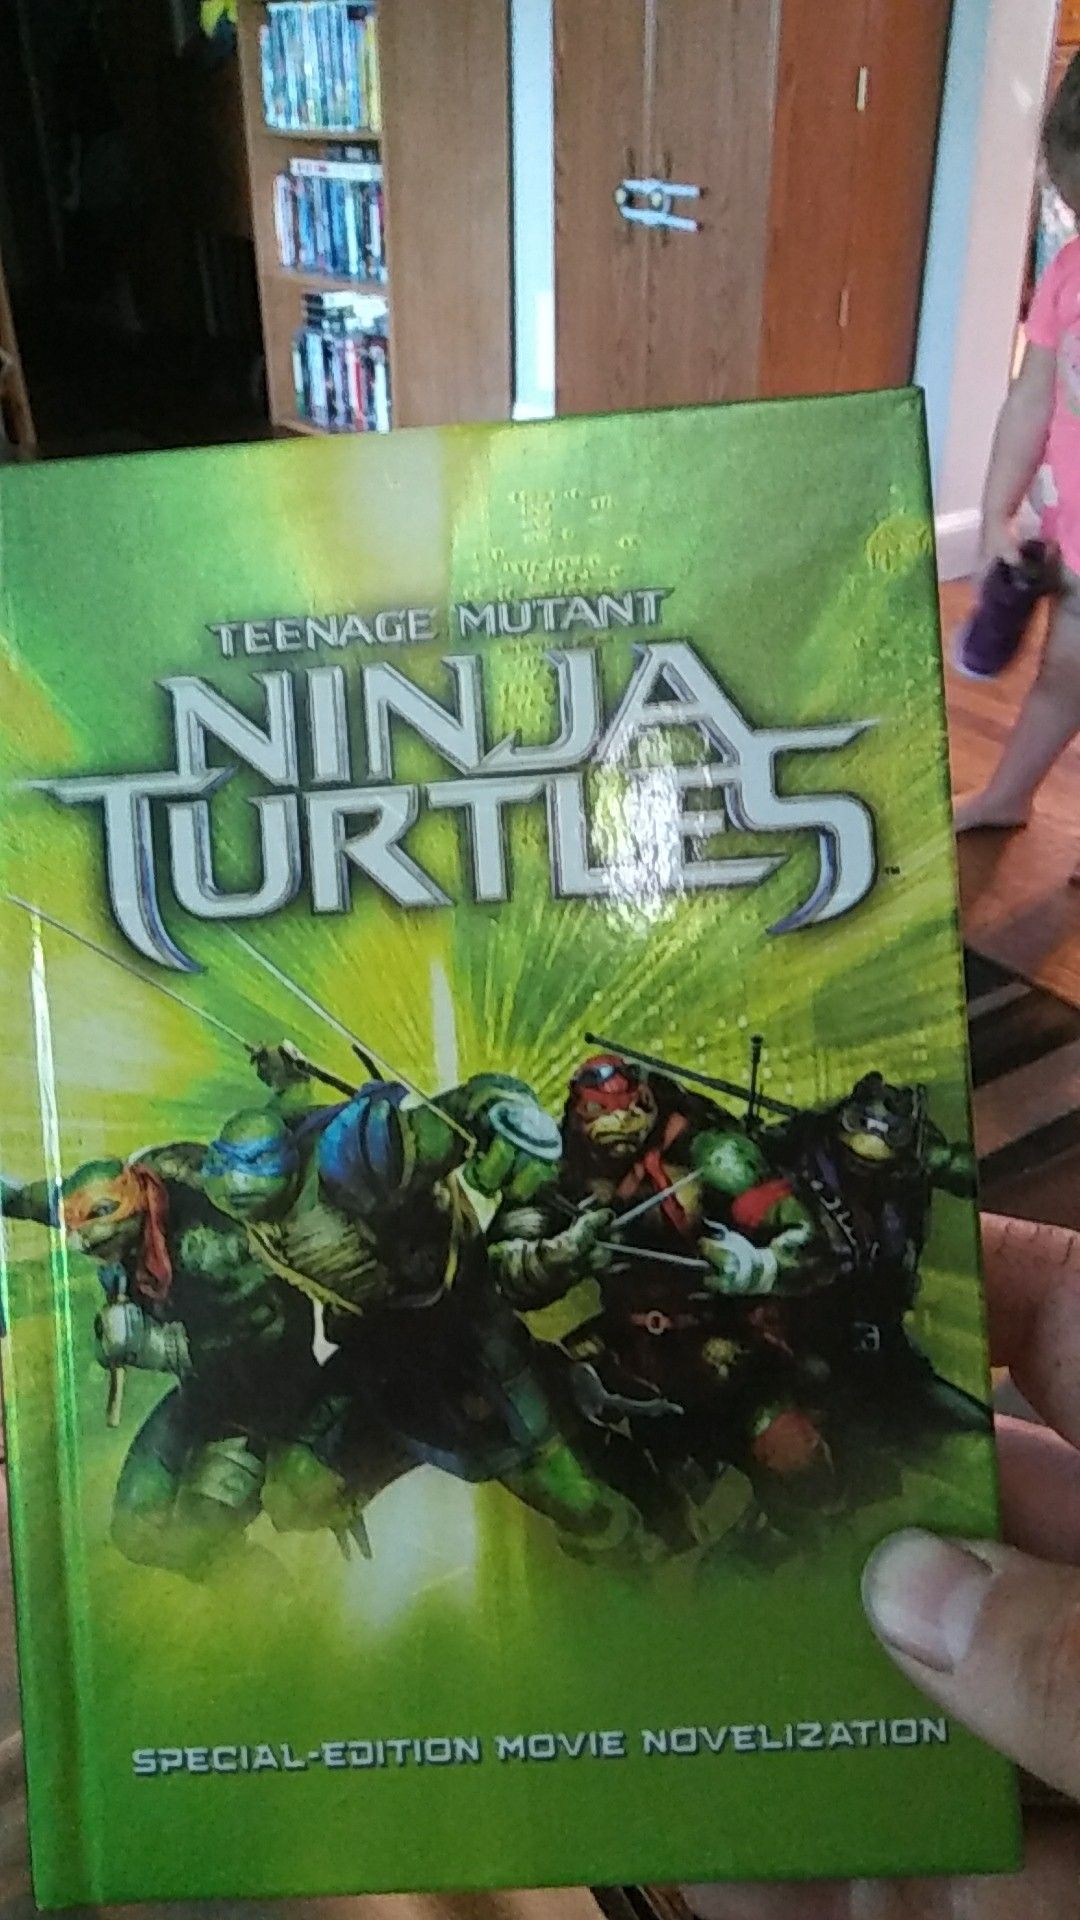 Teenage mutant ninja turtles book